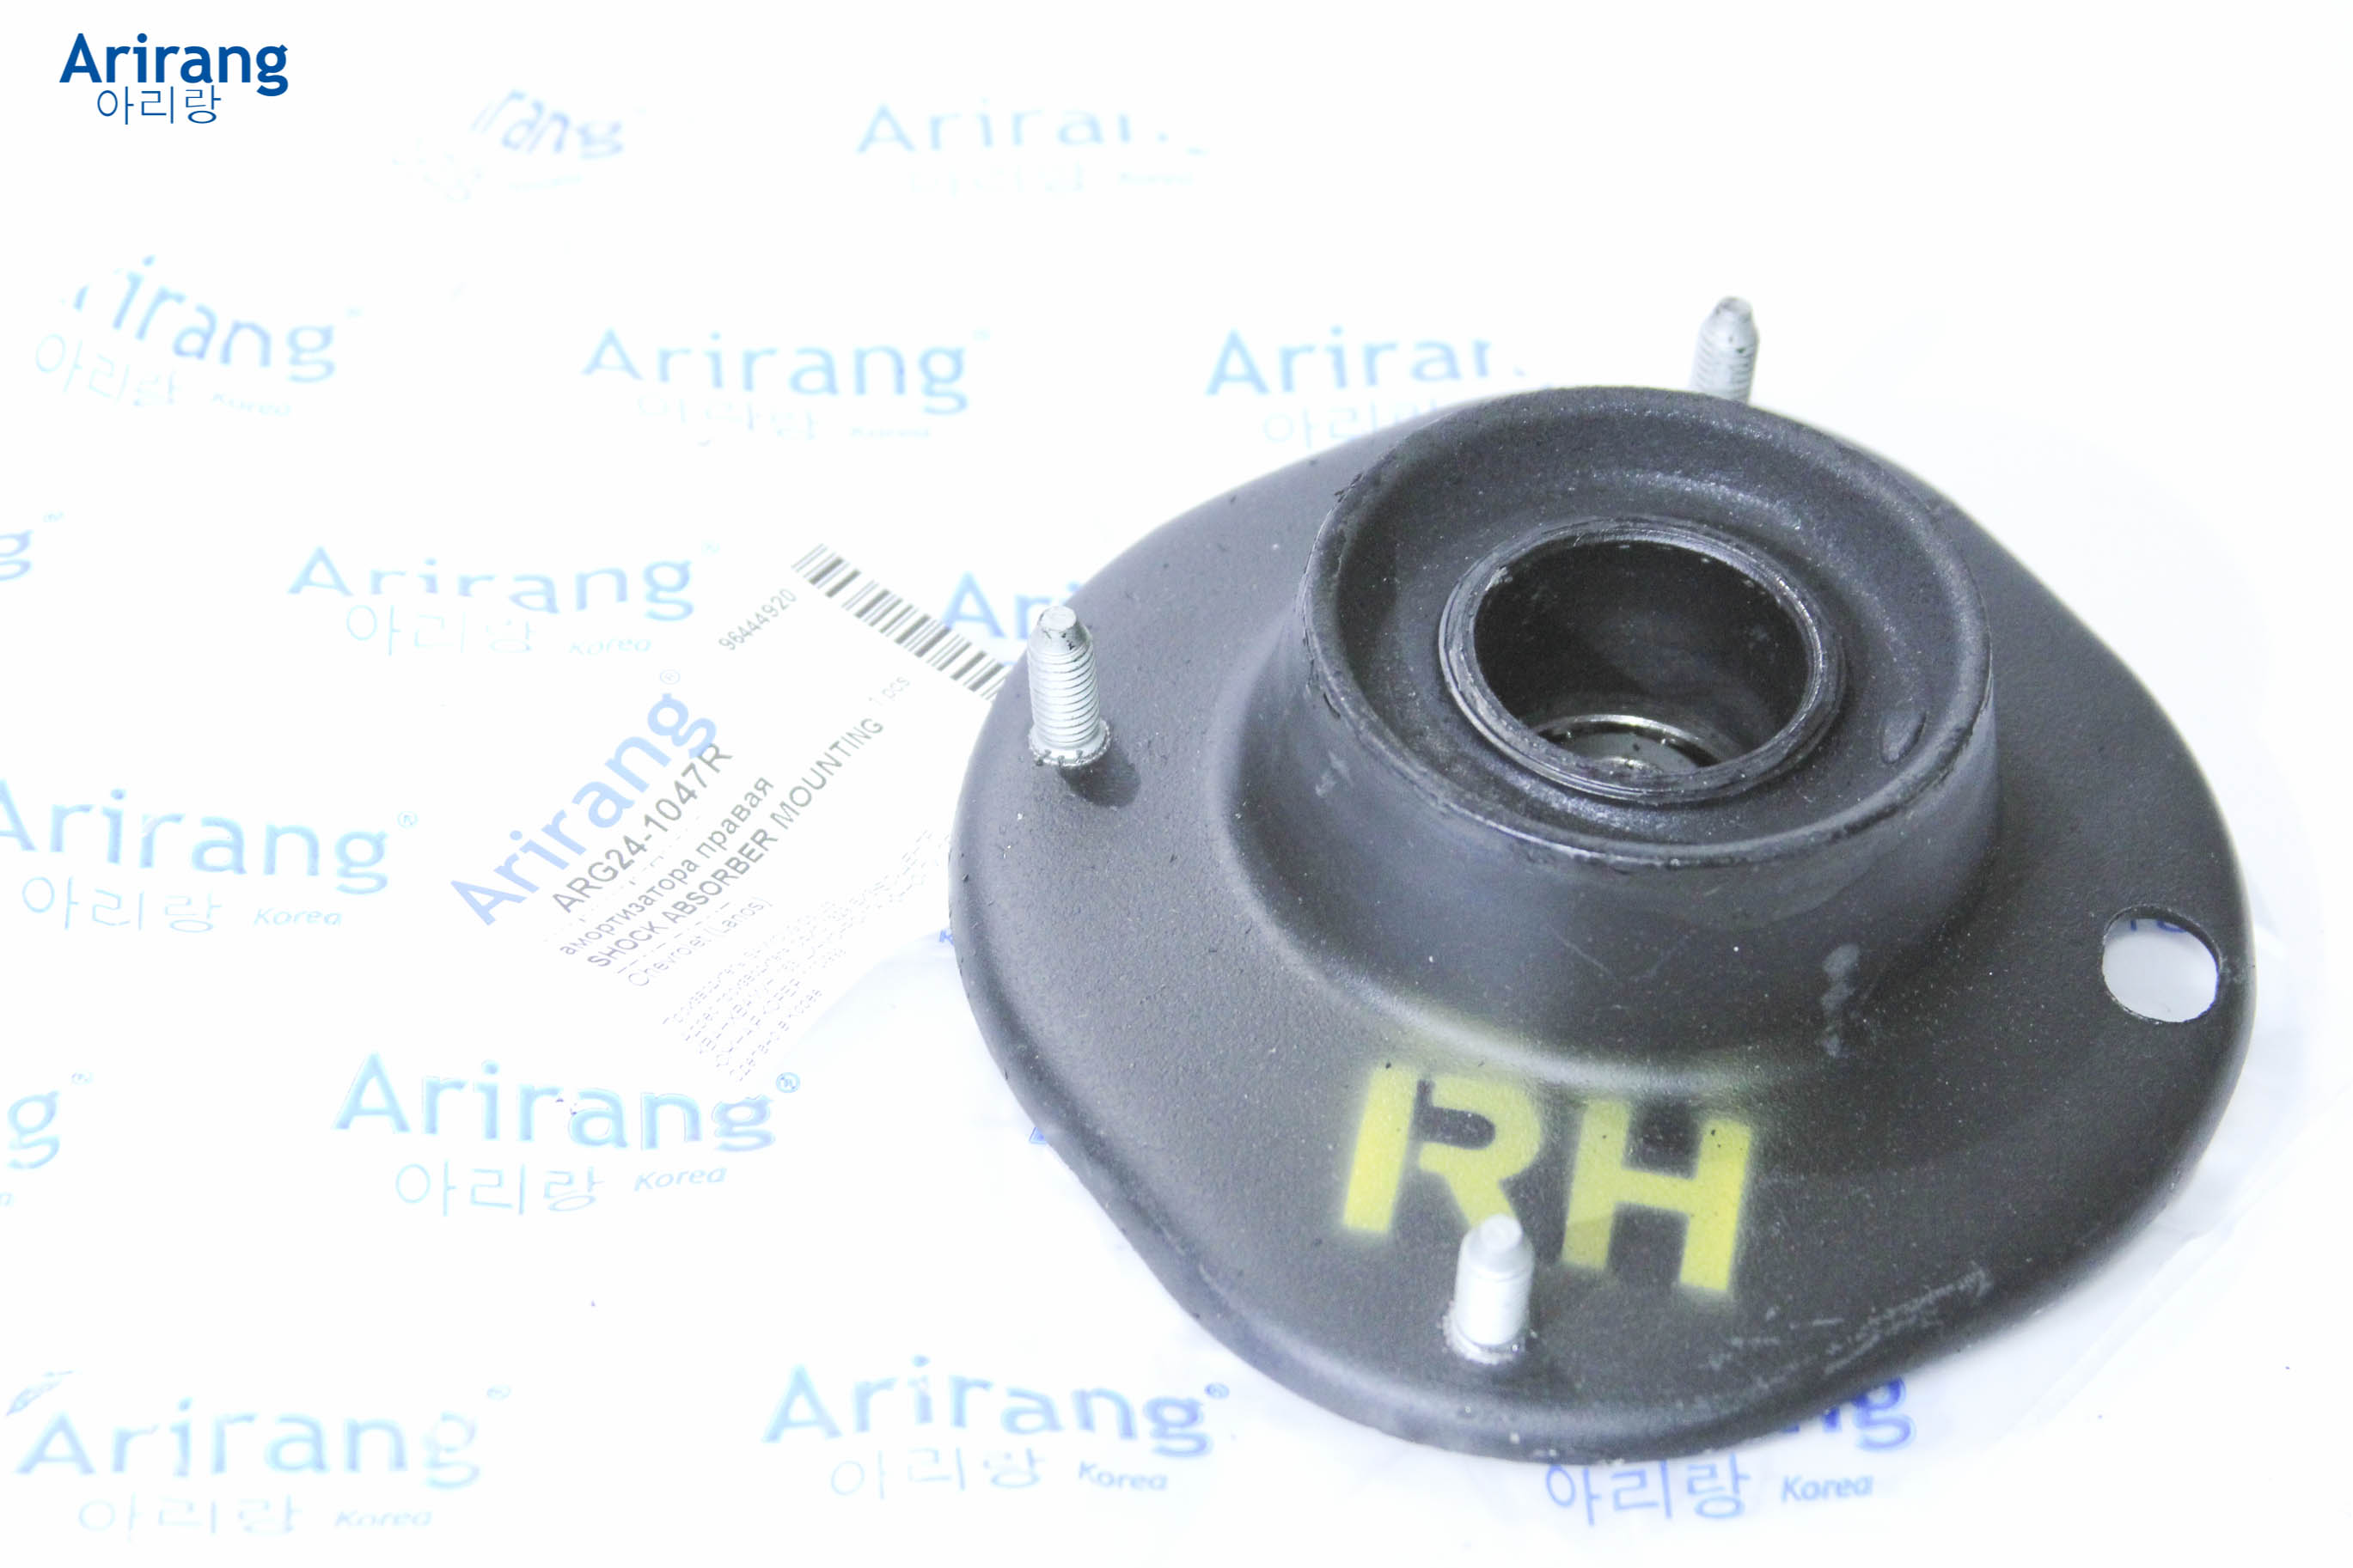 Опора переднего амортизатора правая96444920arg24 Arirang                ARG241047R